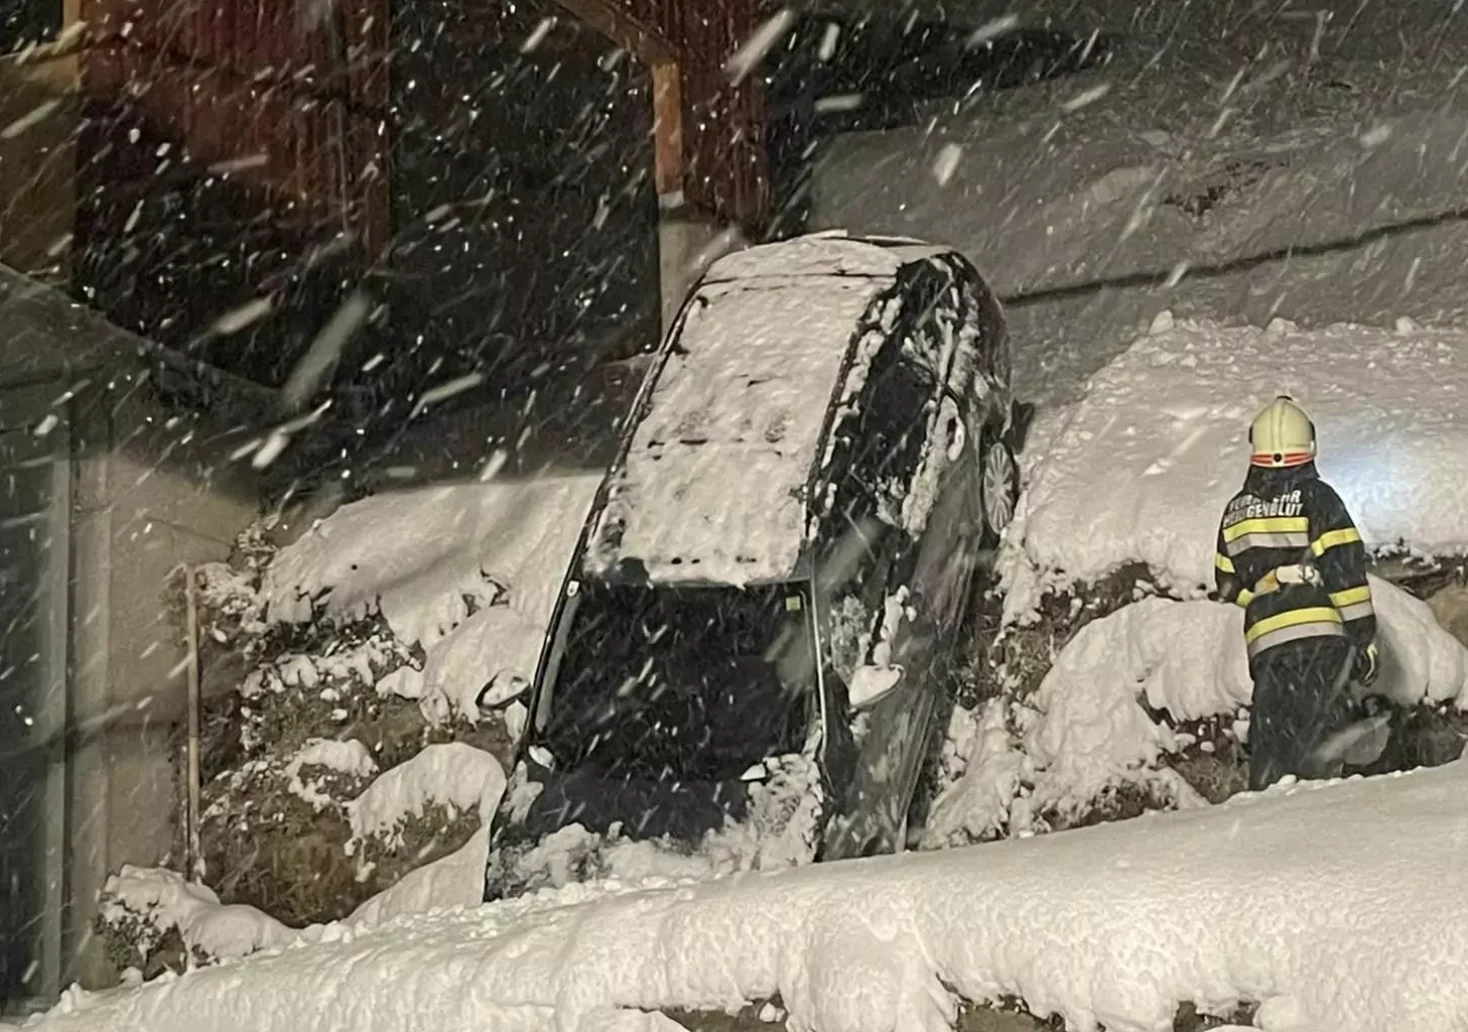 Bild auf 5min.at zeigt die Feuerwehr bei einem Einsatz im Schnee. Ein Auto war abgestürzt.